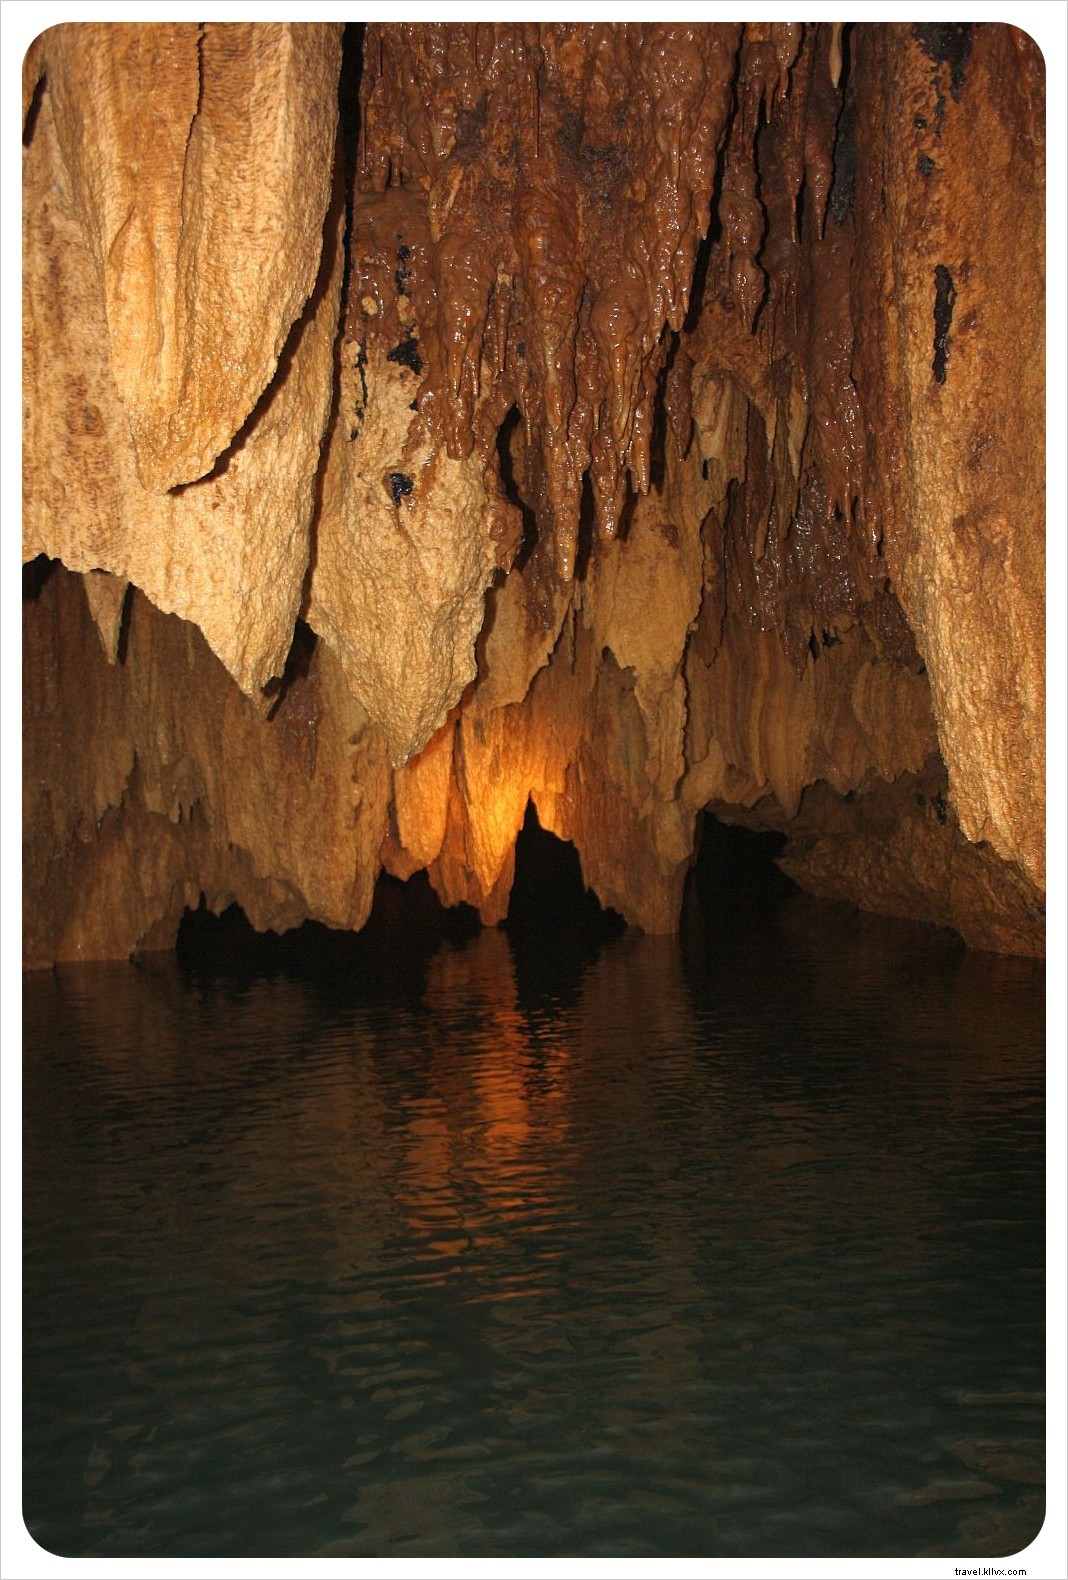 Grotta ATM del Belize:il giorno in cui siamo diventati esploratori di grotte